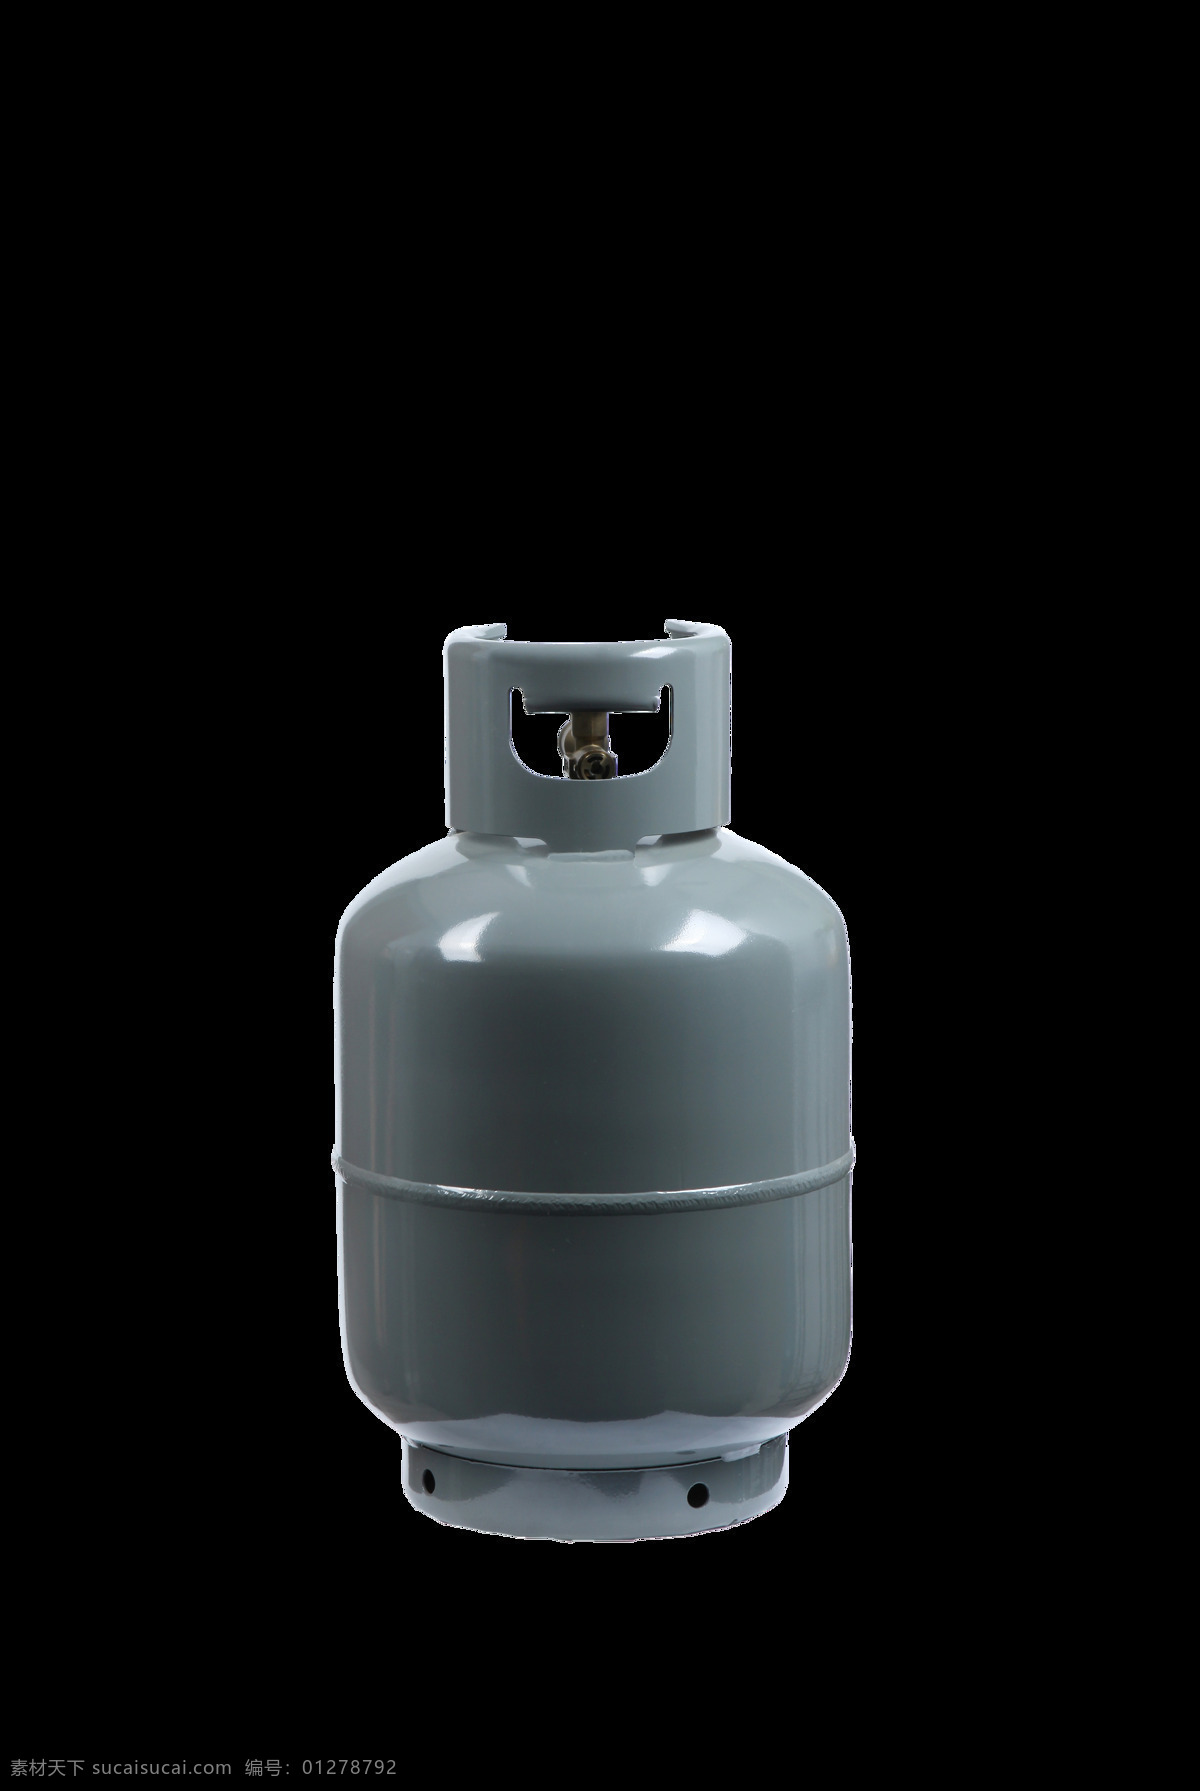 煤气罐 氮气罐 氦气罐 罐子 铁罐子